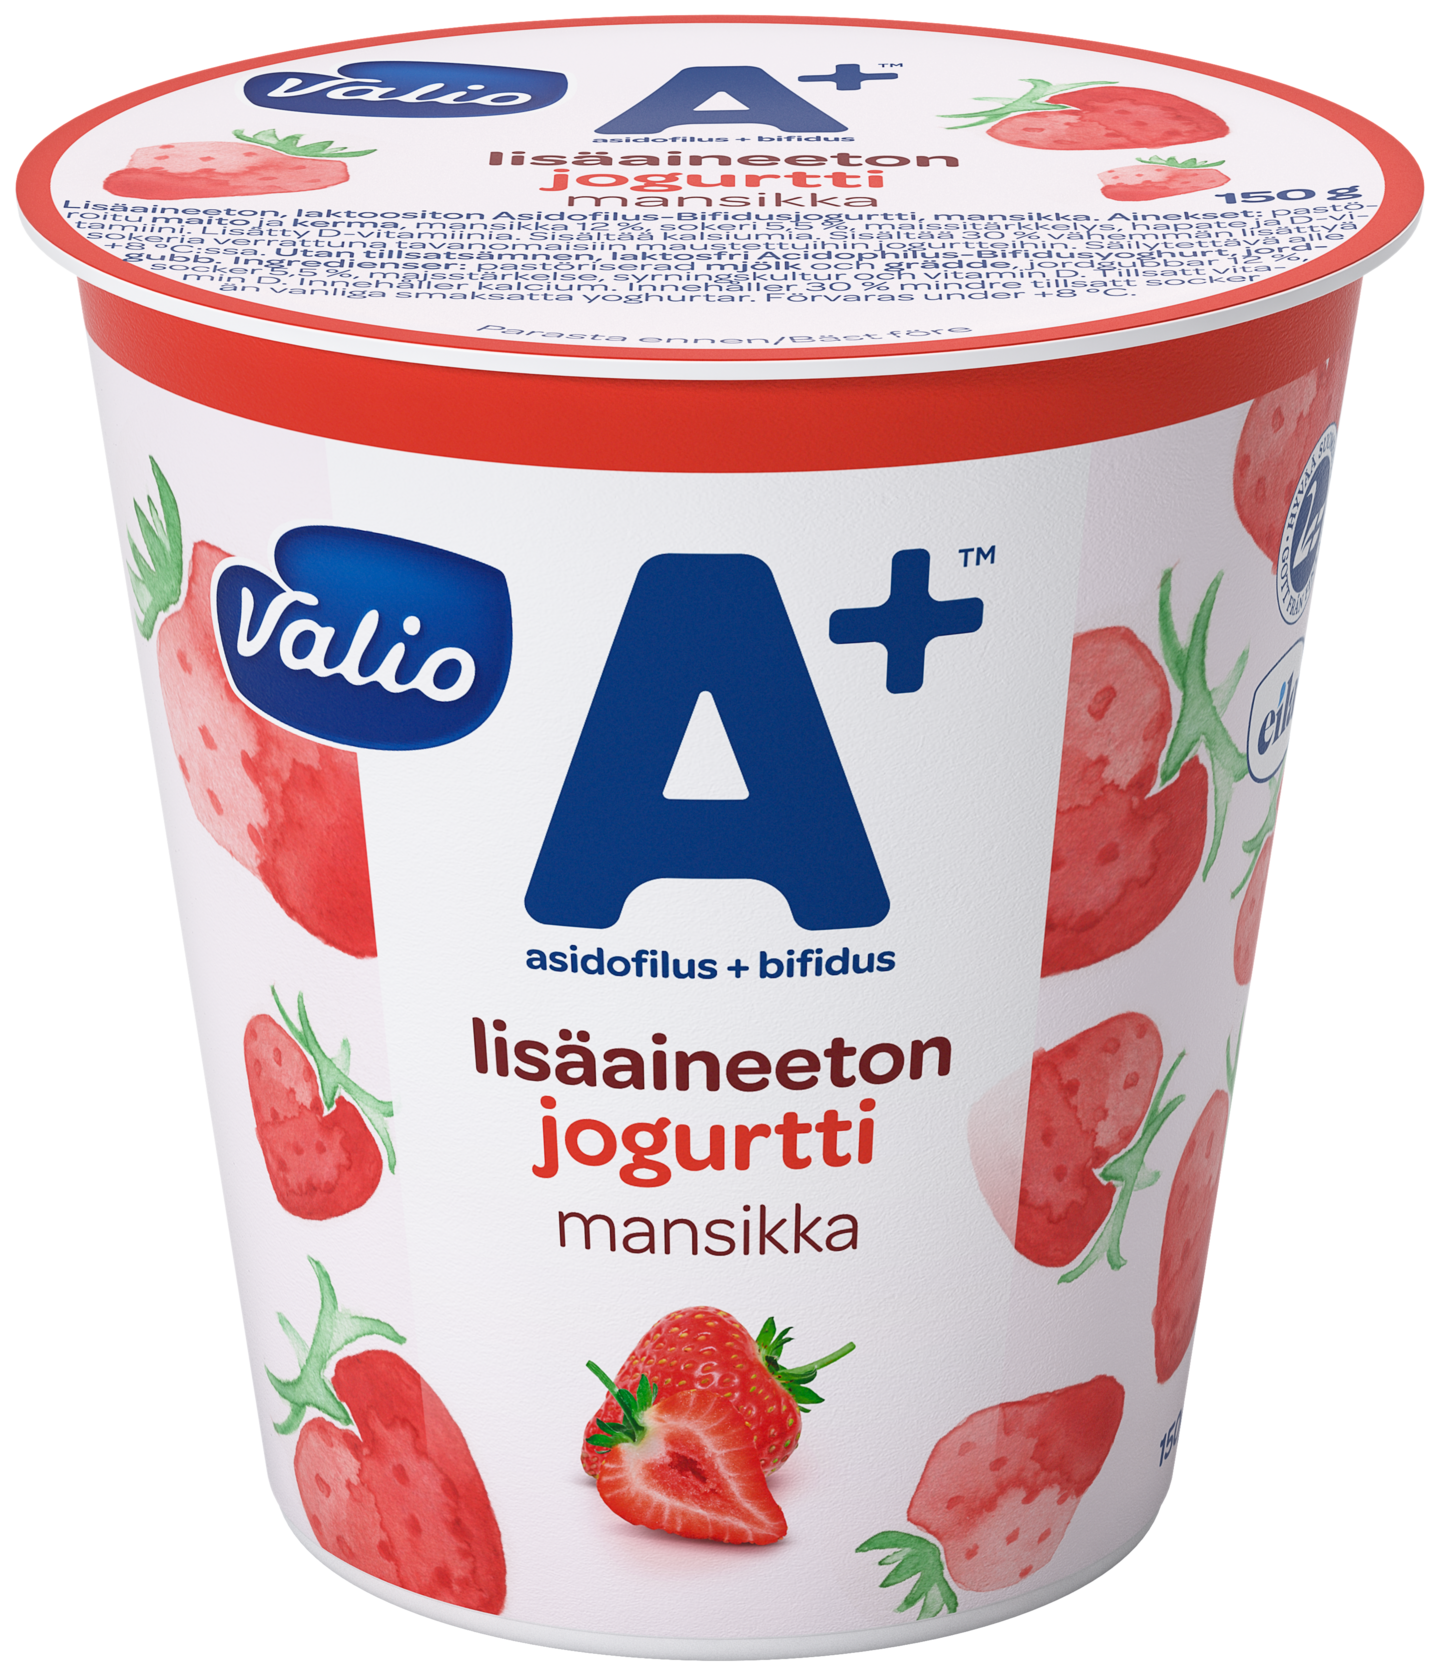 Valio A+ jogurtti 150 g mansikka lisäaineeton laktoositon